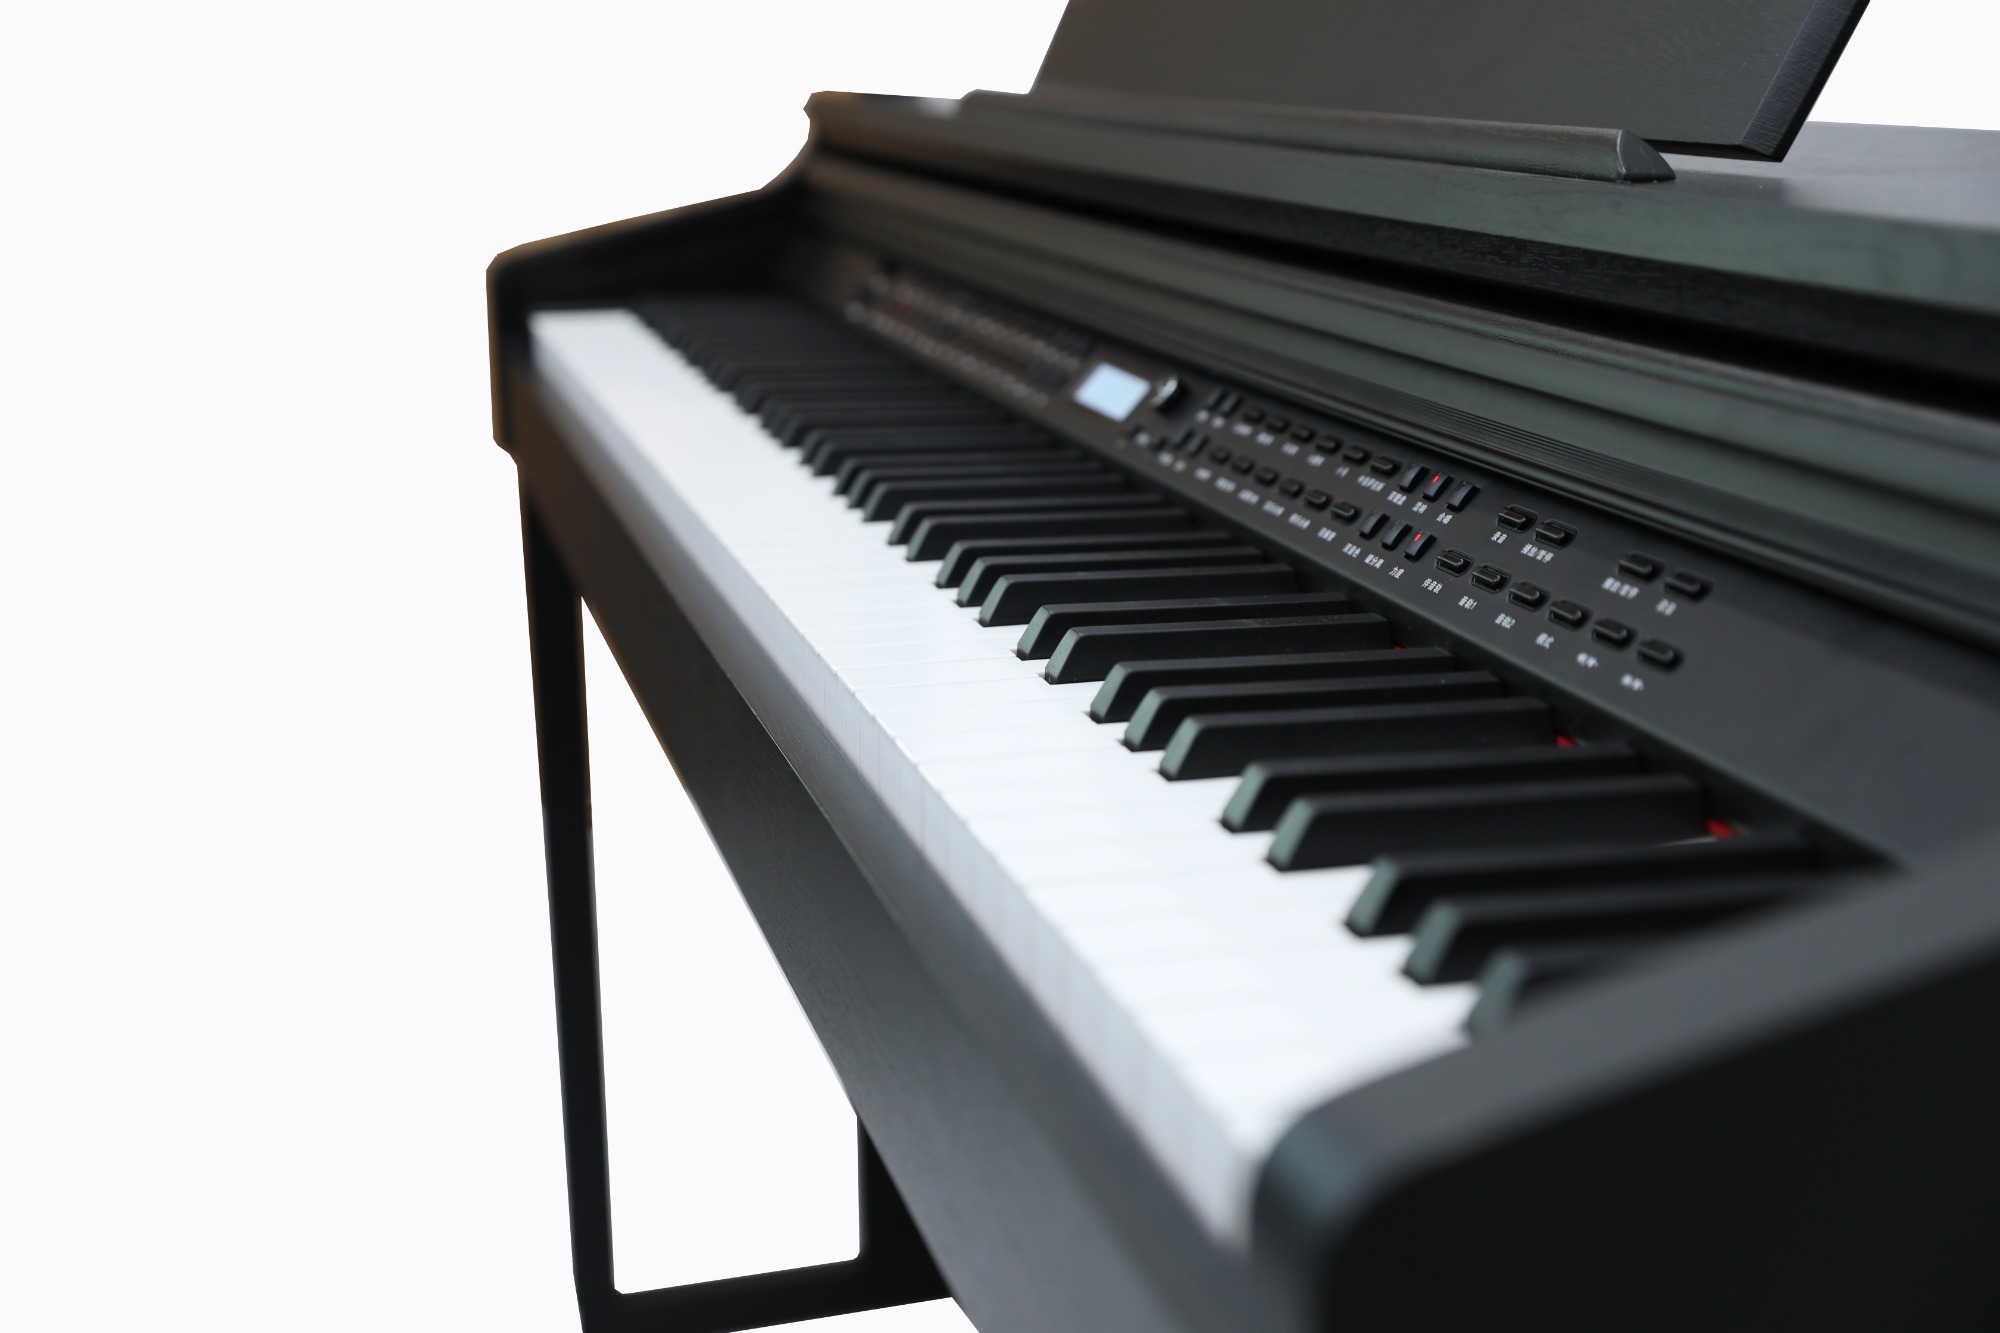 DK-550   高端数码钢琴，仿传统钢琴双立柱设计、进口仿玫瑰木纹黑色PVC饰面、直选式操作面板功能便捷触发